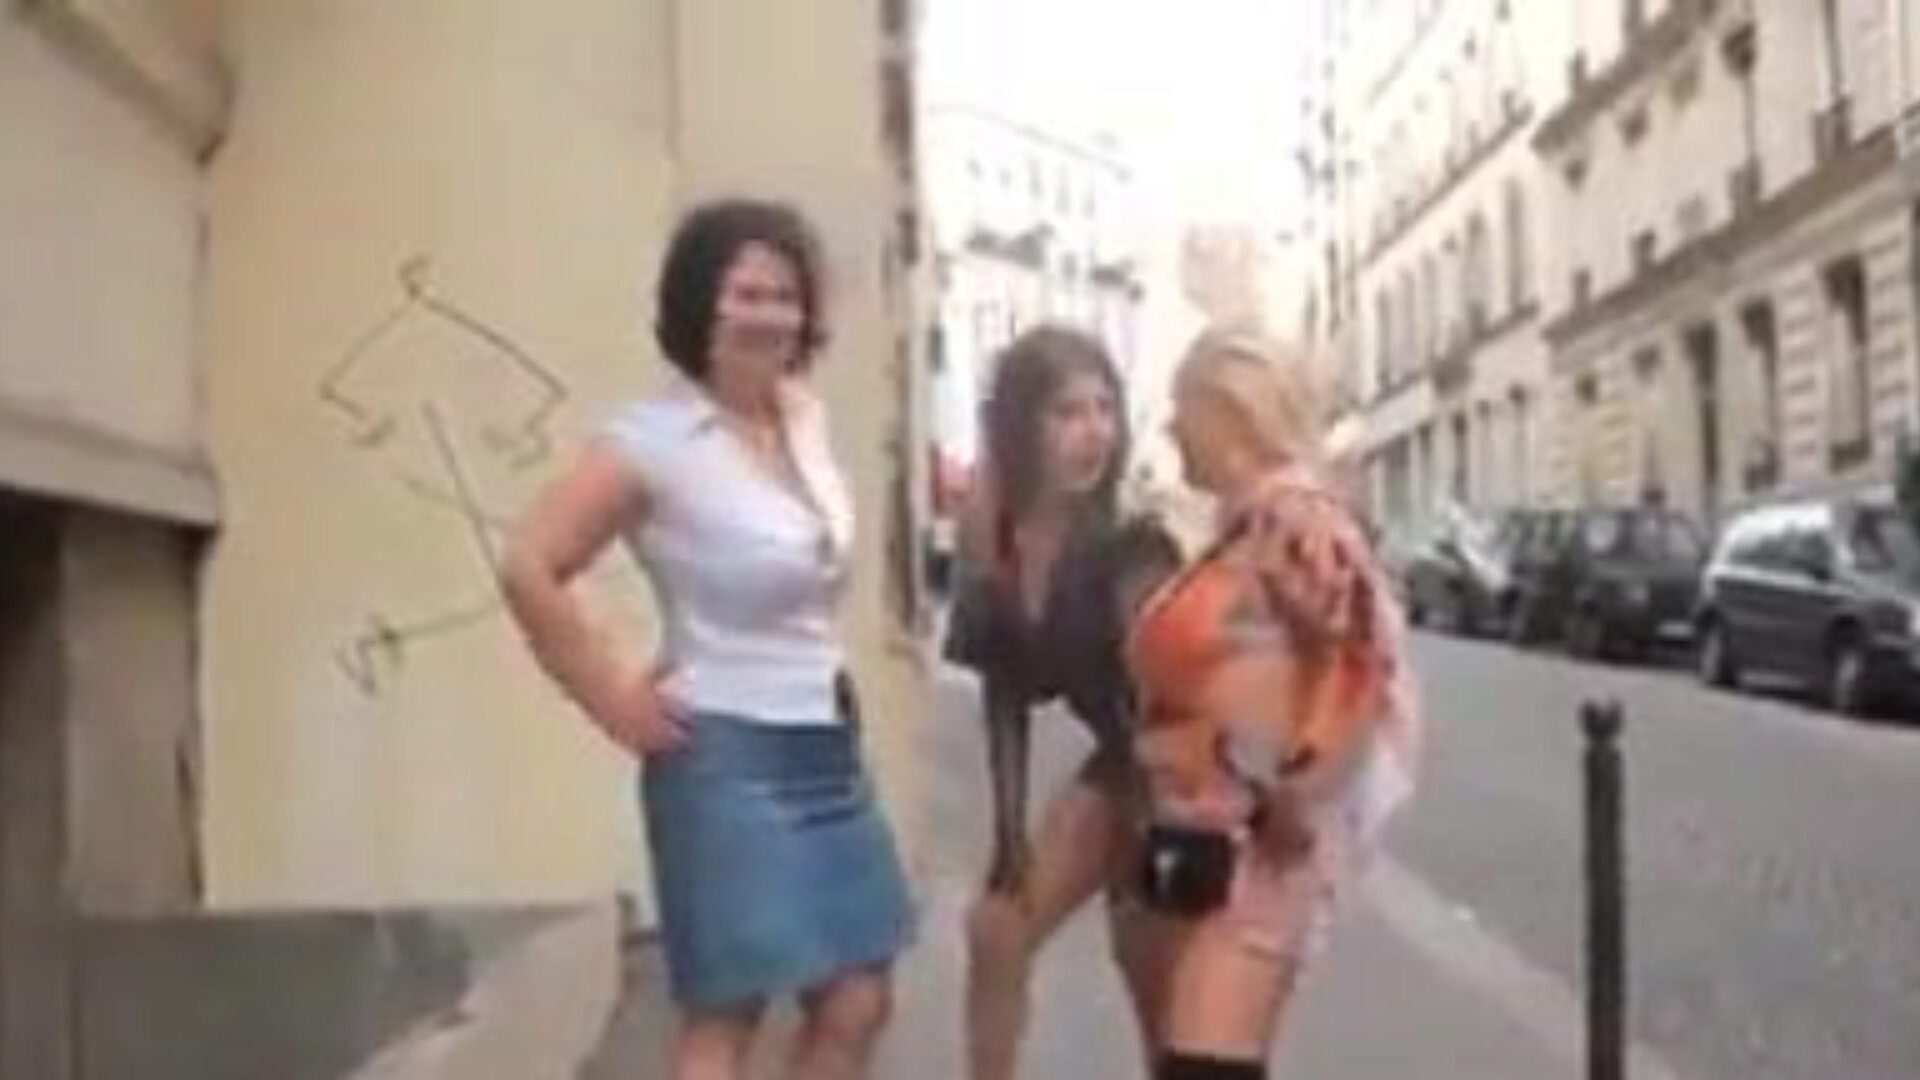 trio dojrzałe: darmowe dojrzałe dvd porno wideo f5 - xhamster oglądaj trio dojrzałe filmy o seksie za darmo na xhamster, z najseksowniejszymi dojrzałymi francuskimi filmami DVD, analnymi i mobilnymi dojrzałymi filmami porno